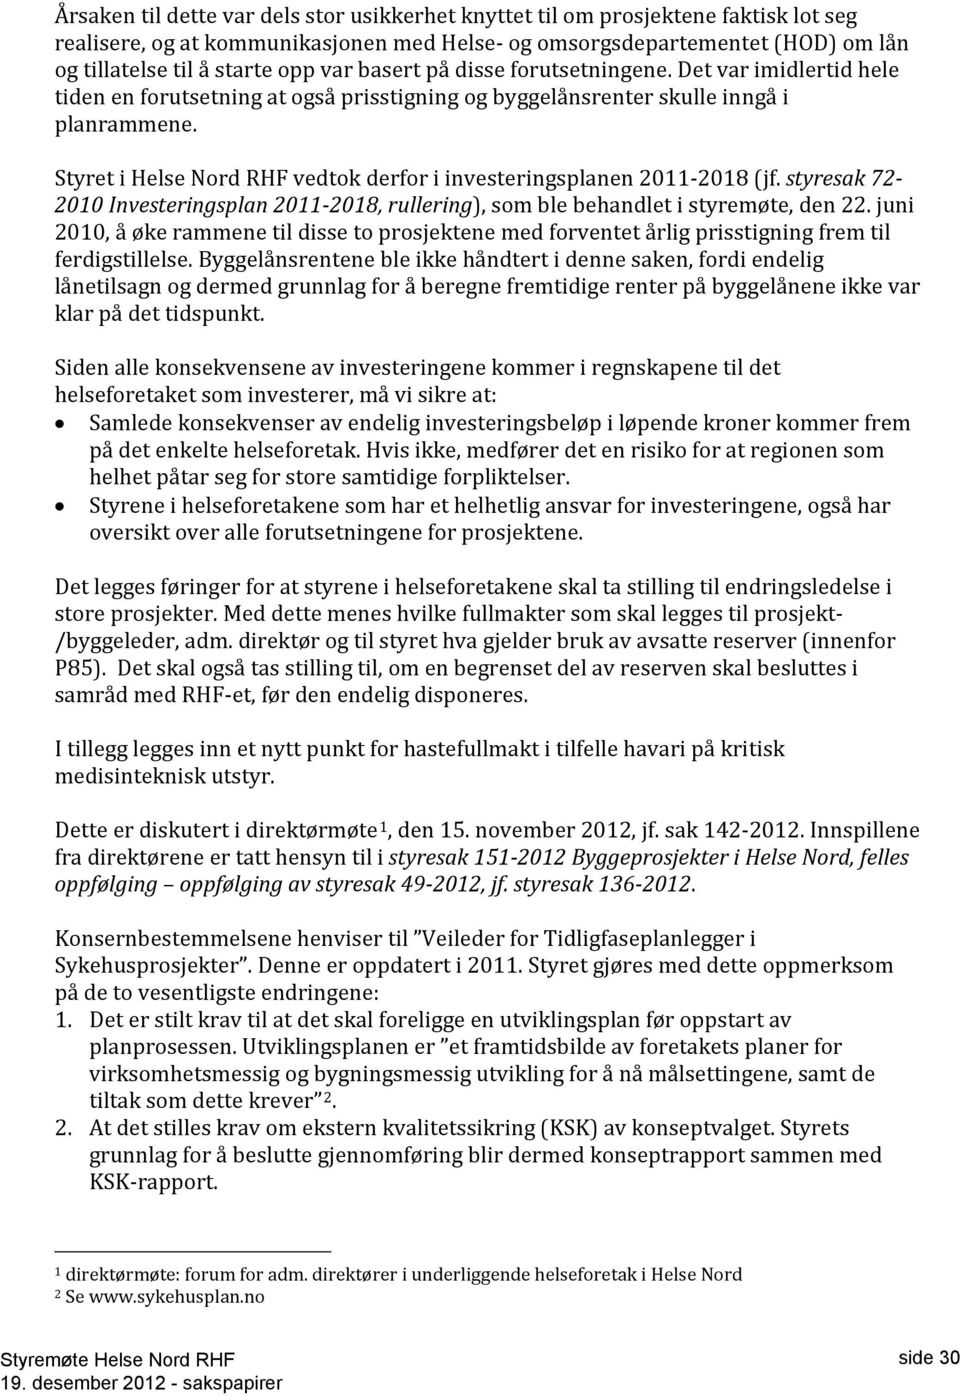 Styret i Helse Nord RHF vedtok derfor i investeringsplanen 2011-2018 (jf. styresak 72-2010 Investeringsplan 2011-2018, rullering), som ble behandlet i styremøte, den 22.